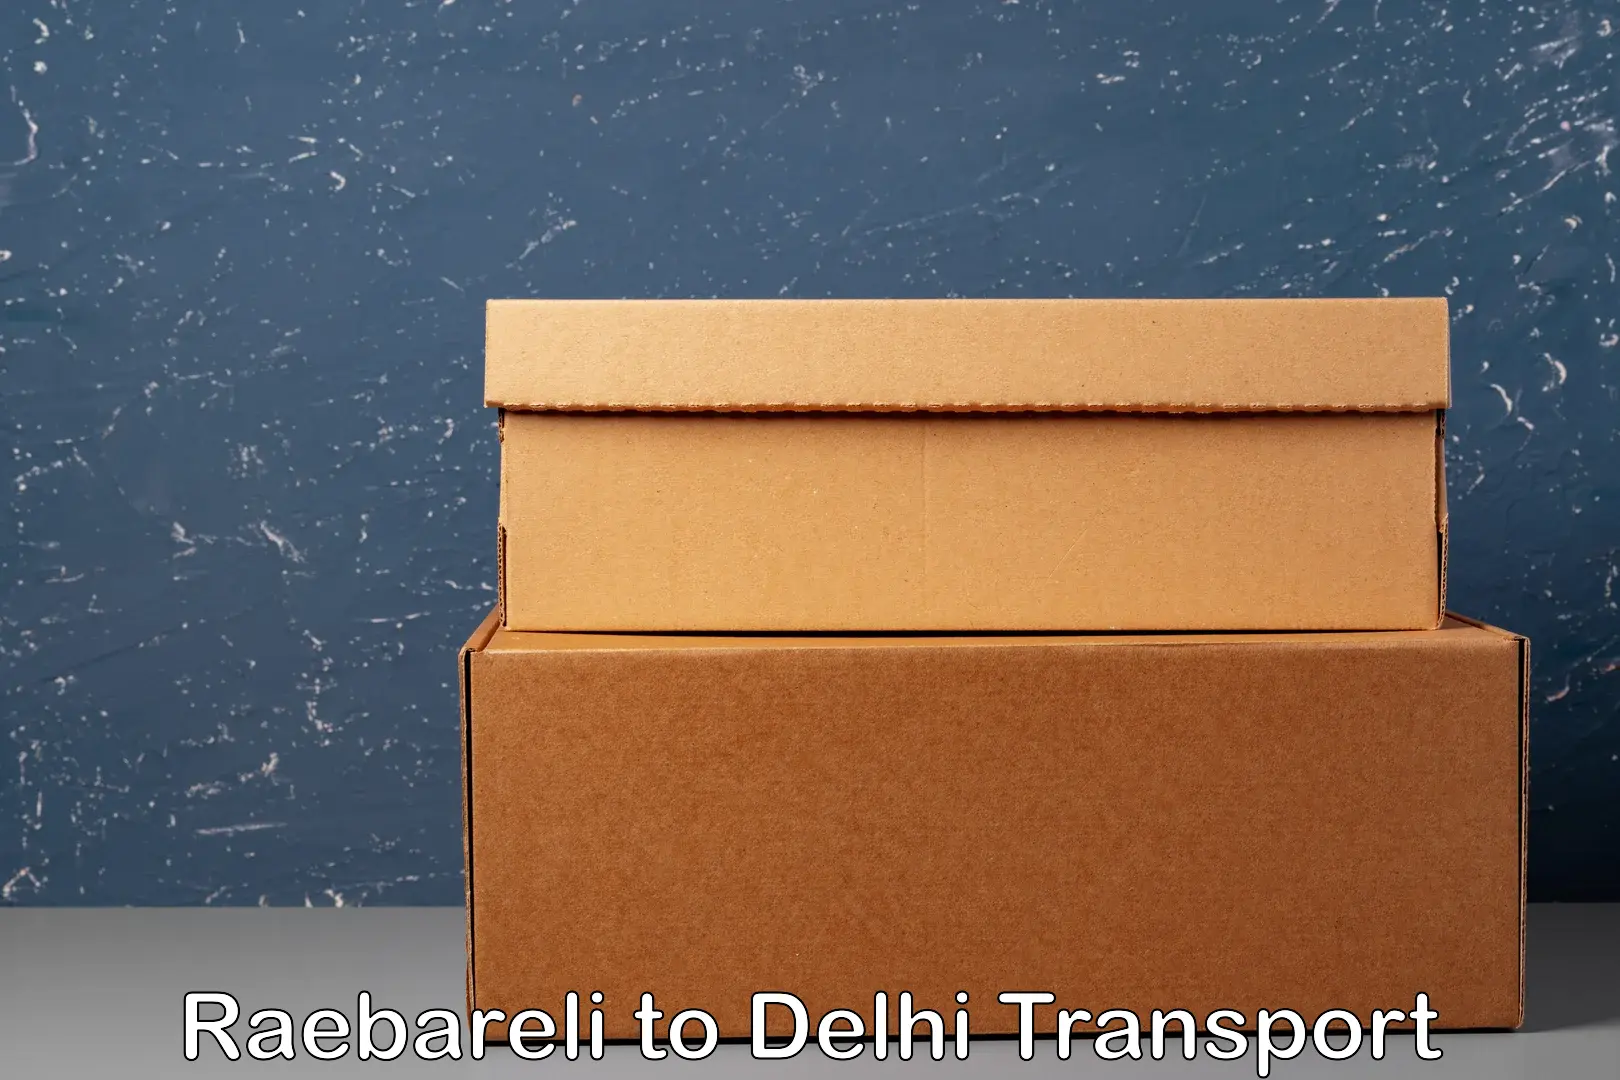 Shipping partner Raebareli to Delhi